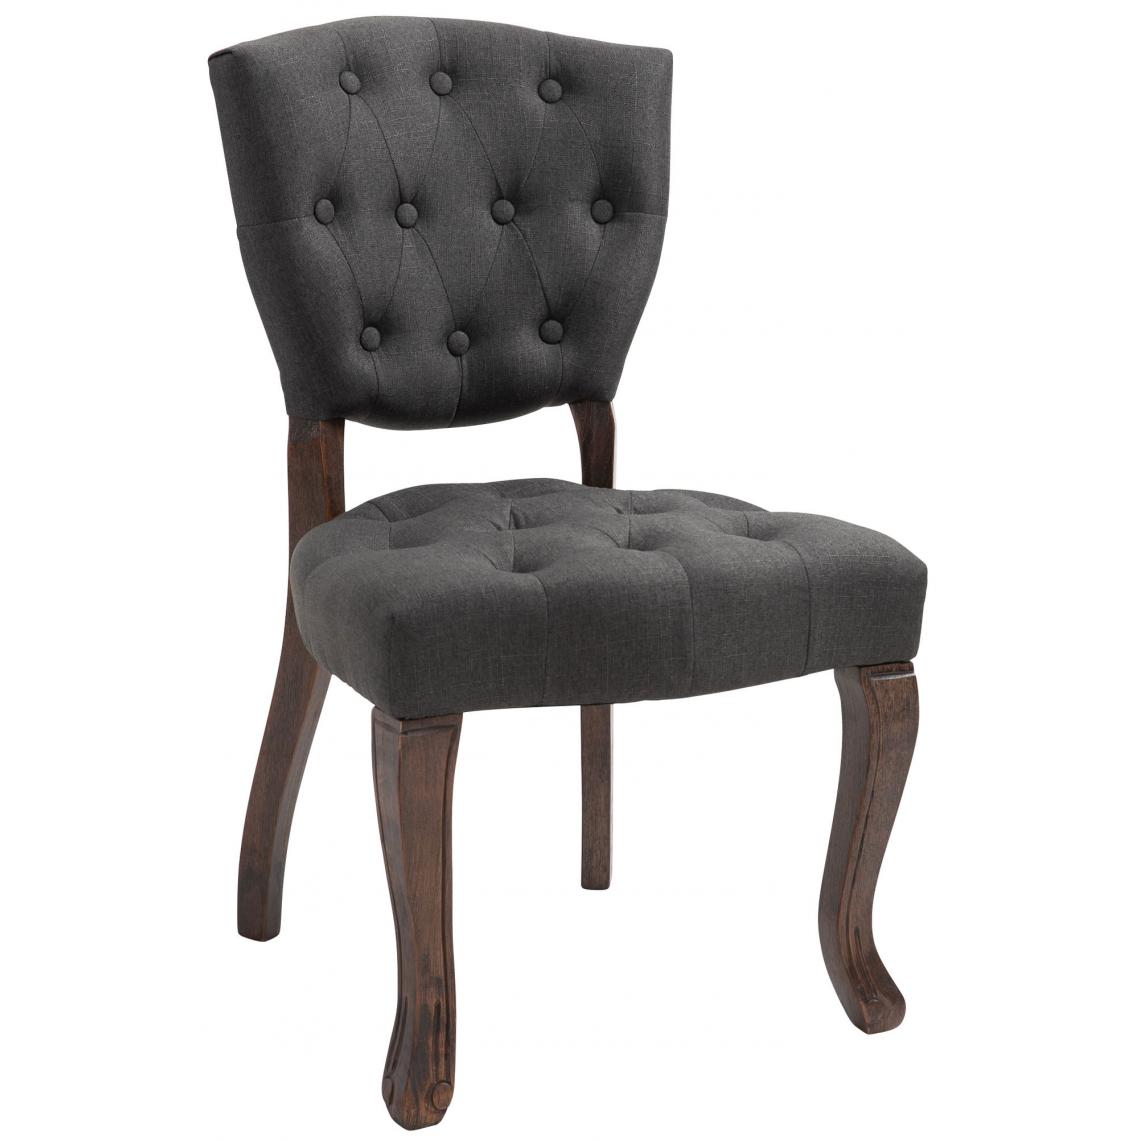 Icaverne - Moderne Chaise de salle à manger categorie Managua tissu antique foncé couleur gris foncé - Chaises